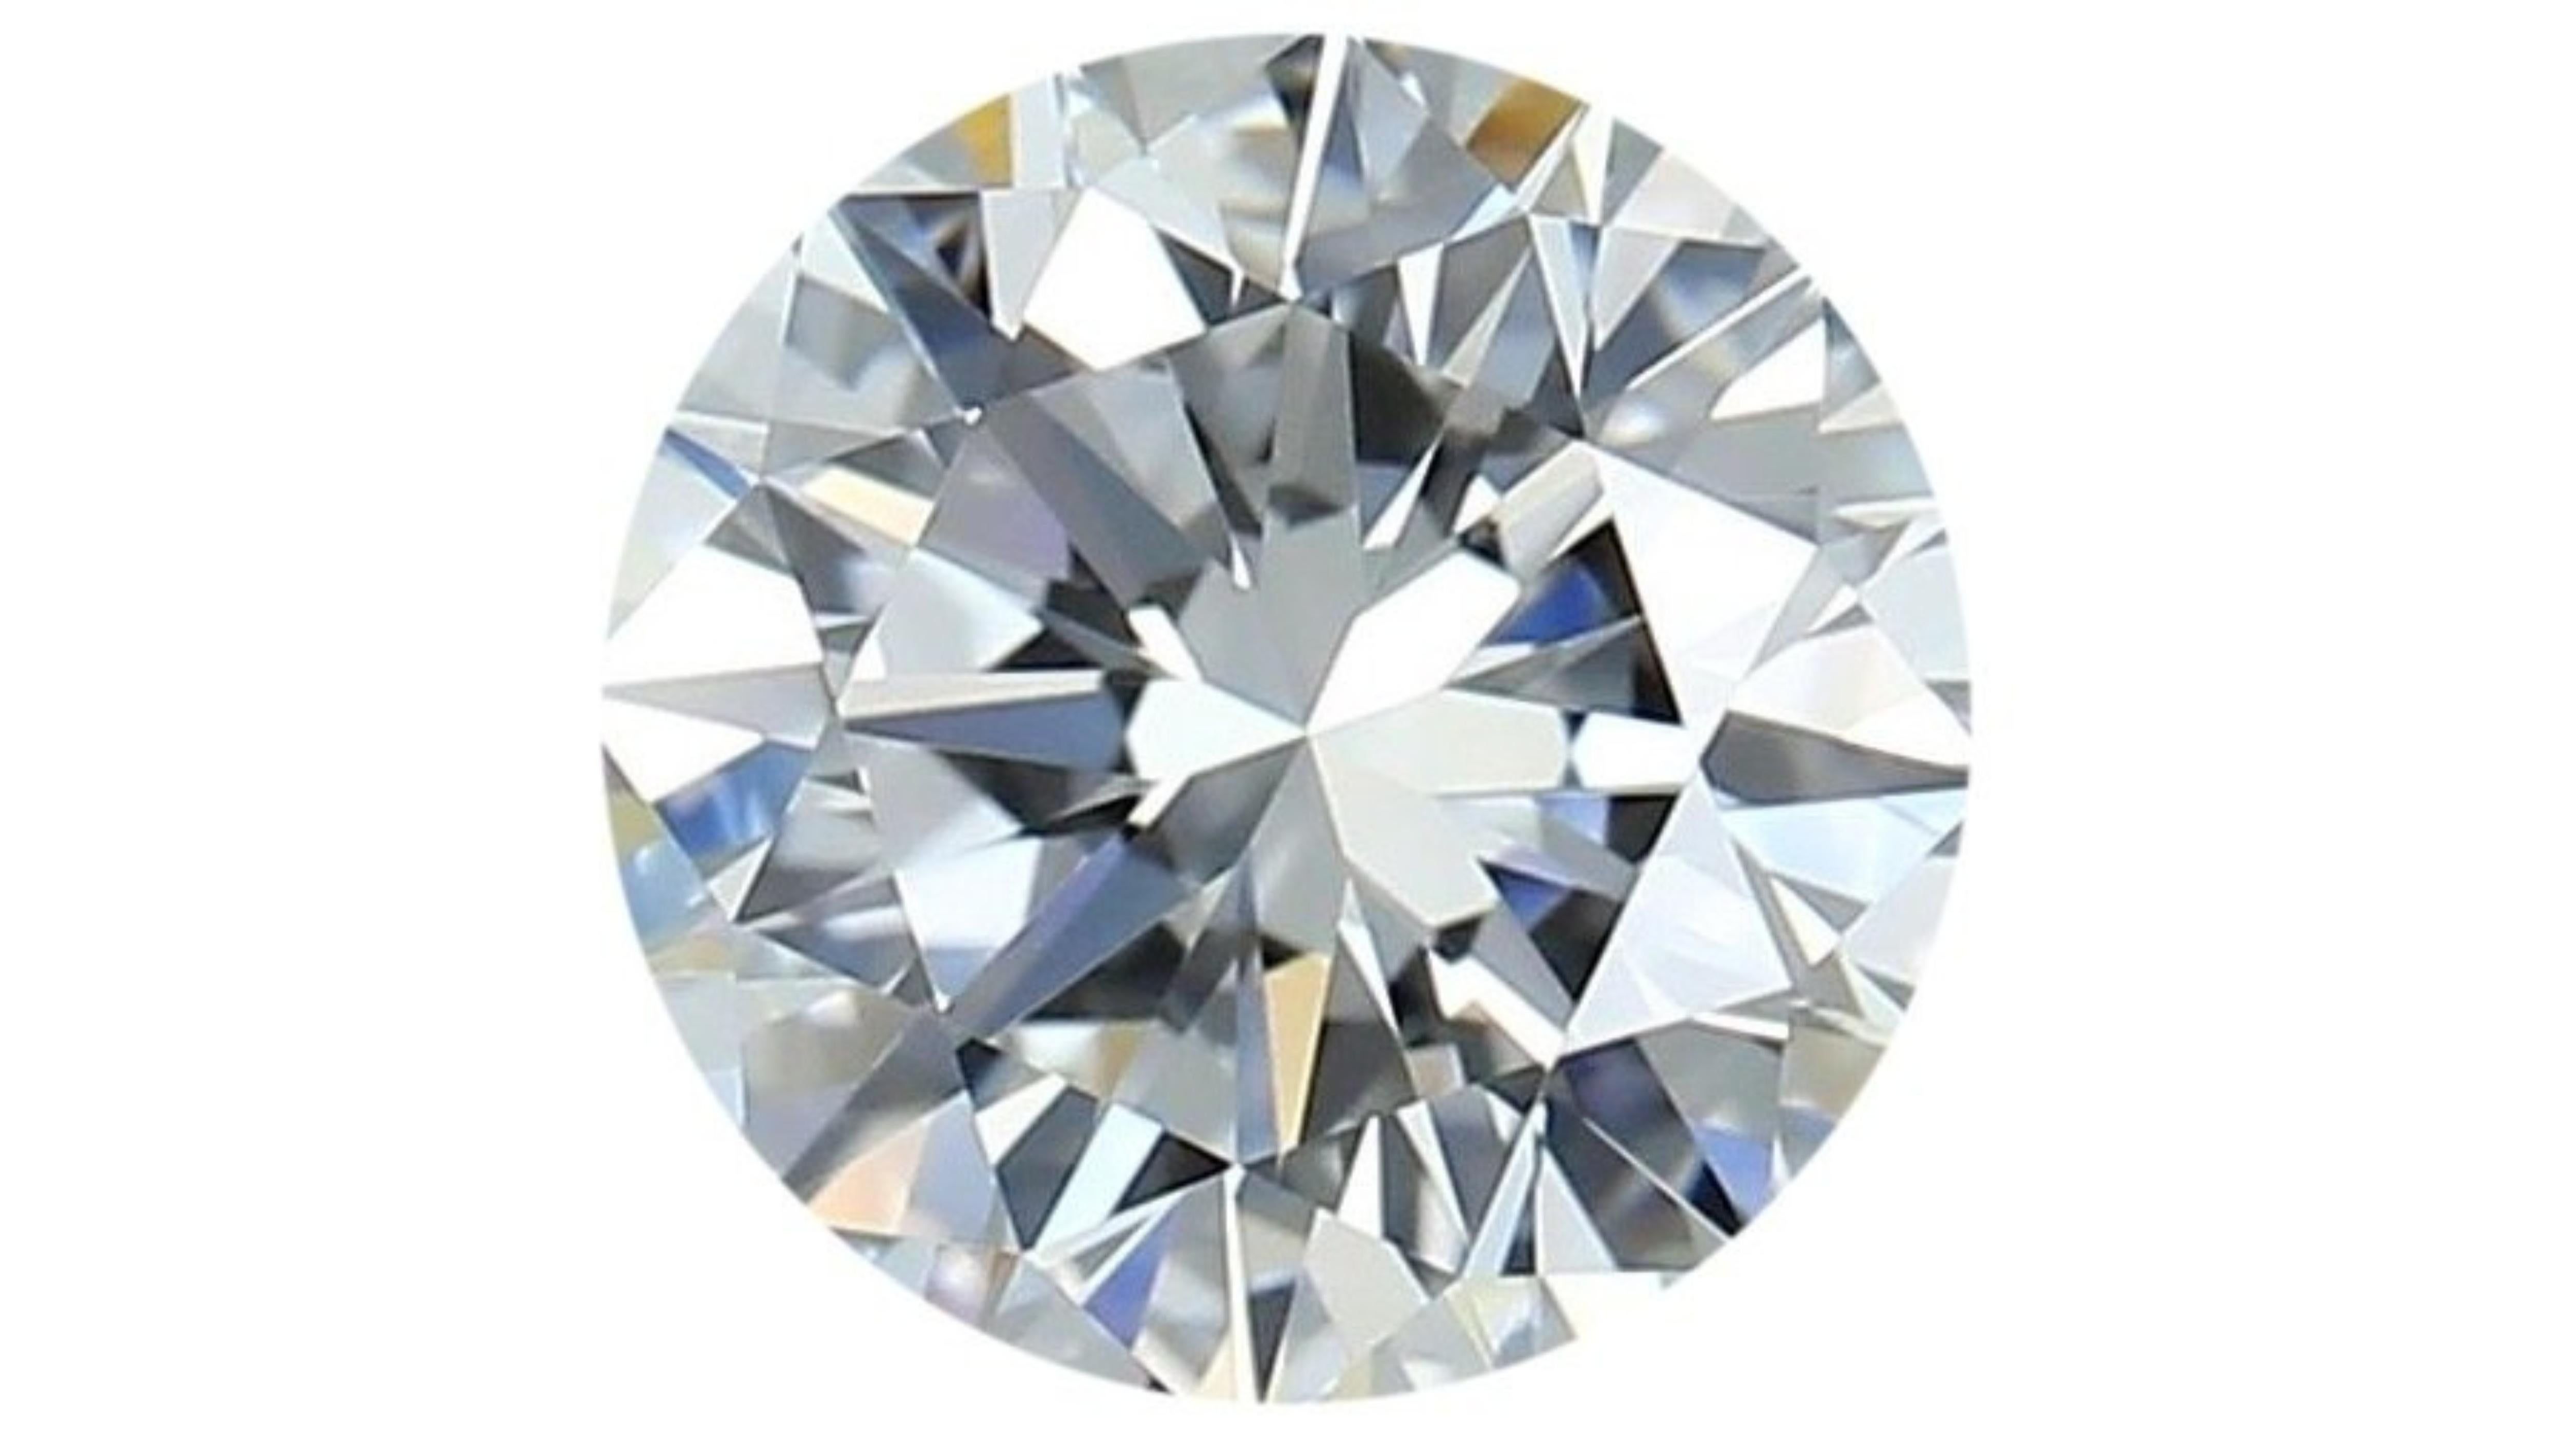 Sparkling .6 carat round brilliant cut natural diamond